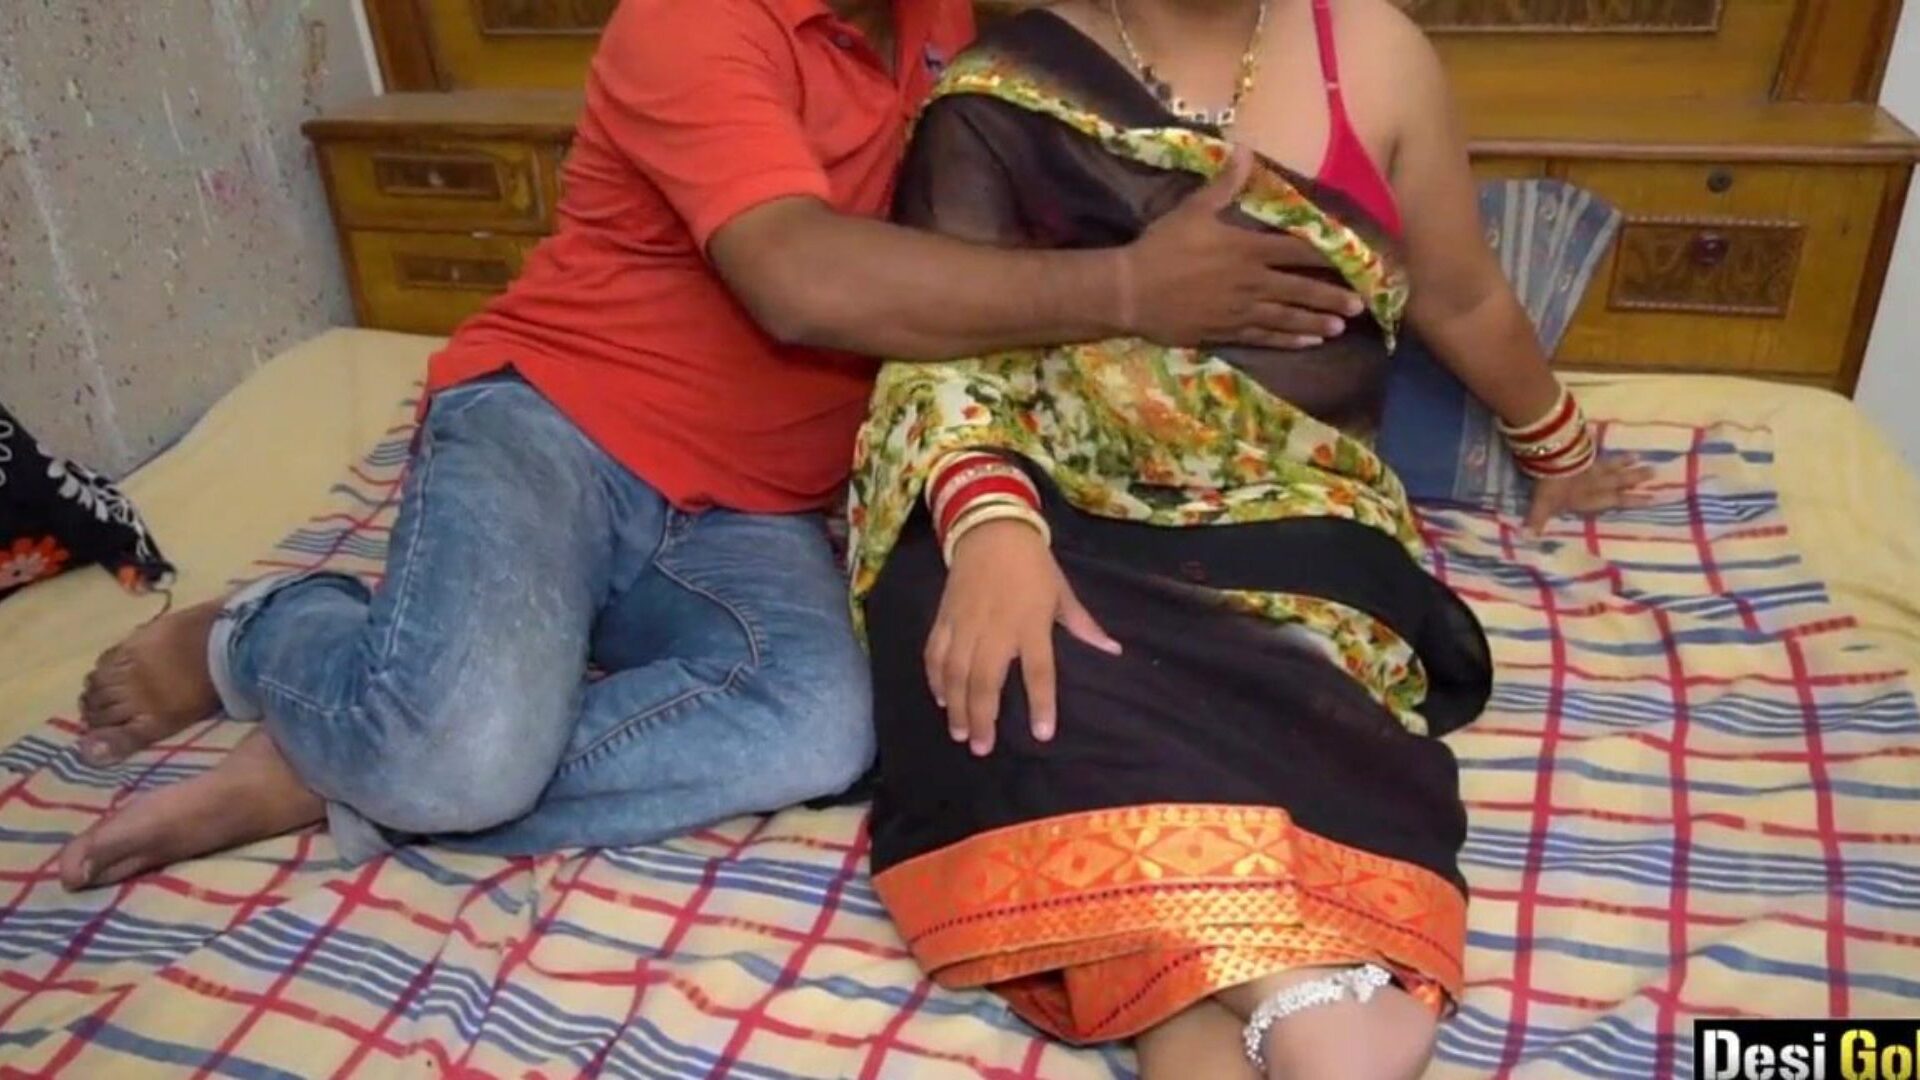 אישה הודית מקיימת יחסי מין עם חברו של הבעל